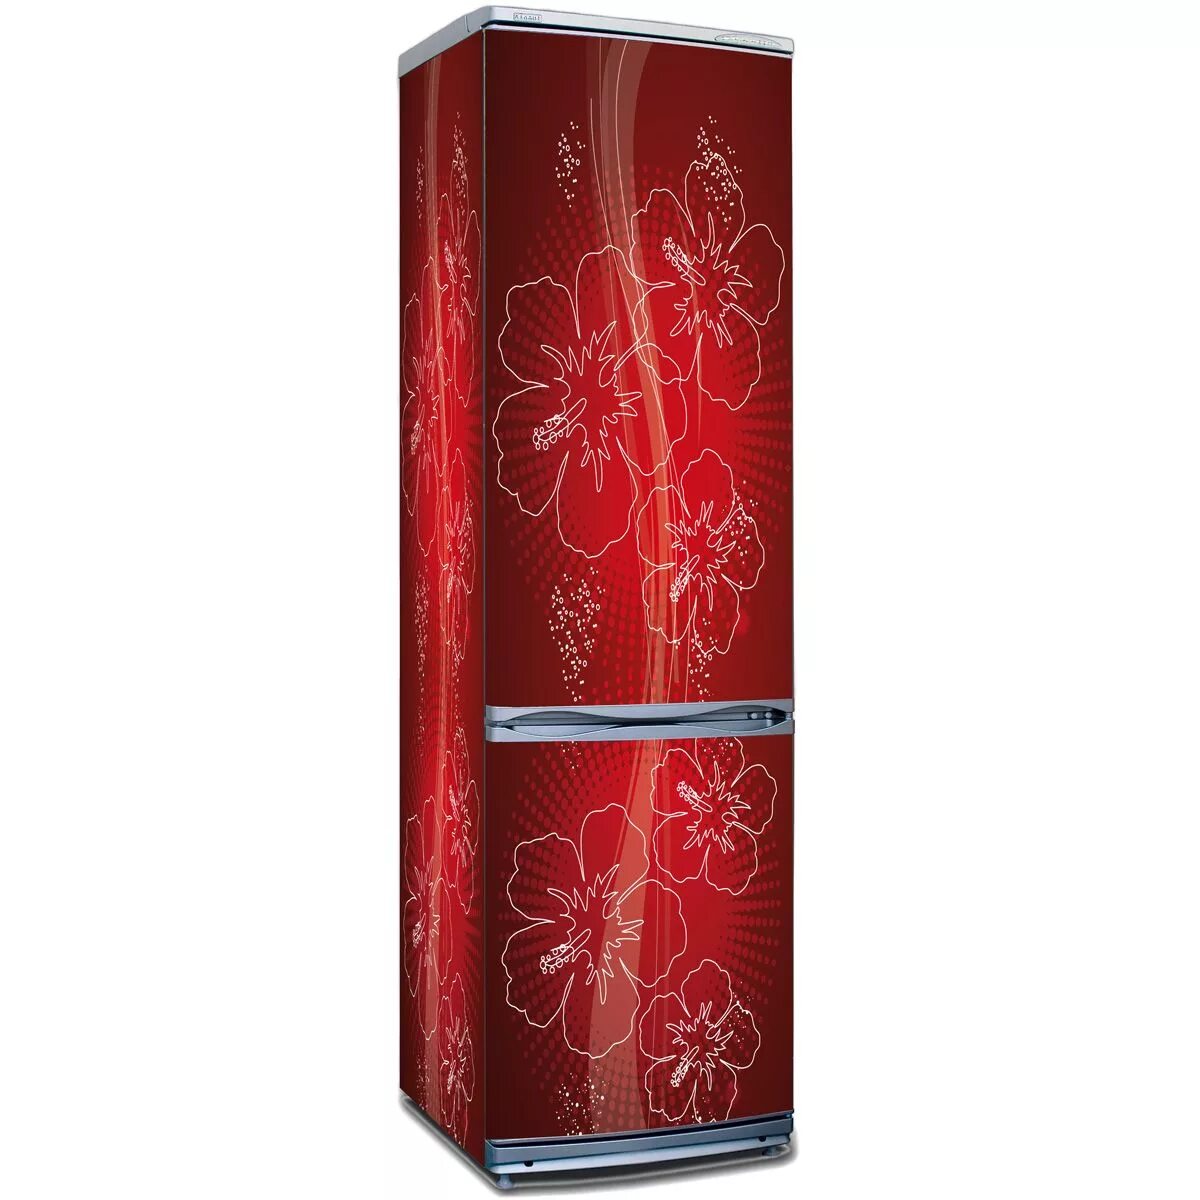 Холодильник Позис красного цвета. Холодильник LG mez62669906 красный. Красный холодильник ДНС. Холодильник Тошиба красный. Сайт днс холодильники